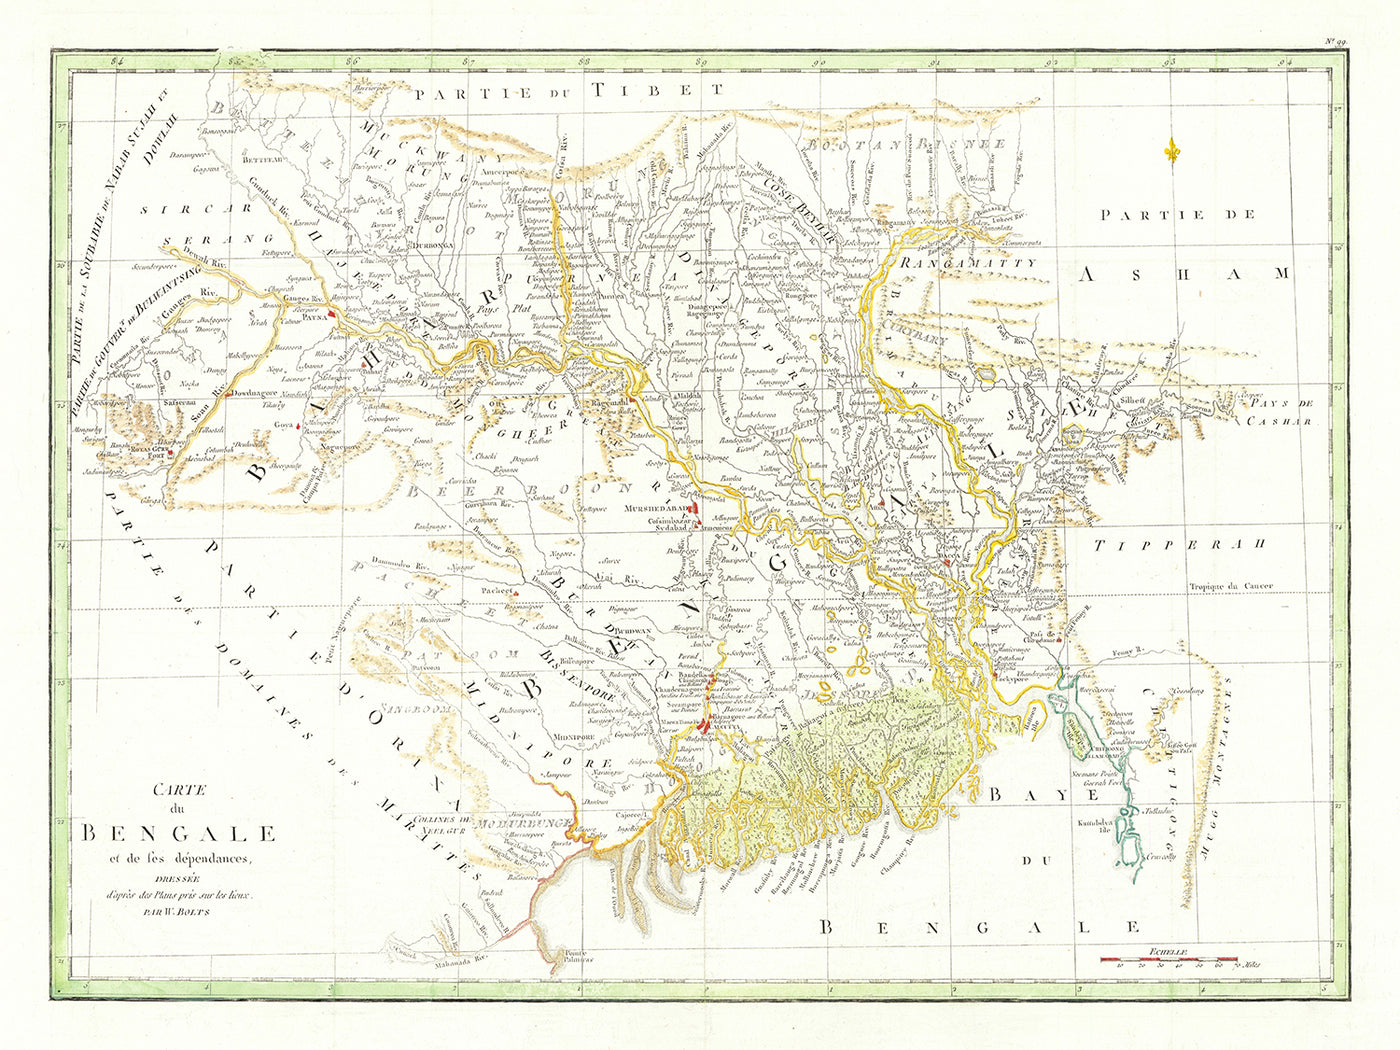 Mapa antiguo de la India oriental y Bangladesh por William Bolts, 1773: Calcuta, Dacca, Patna, Murshidabad